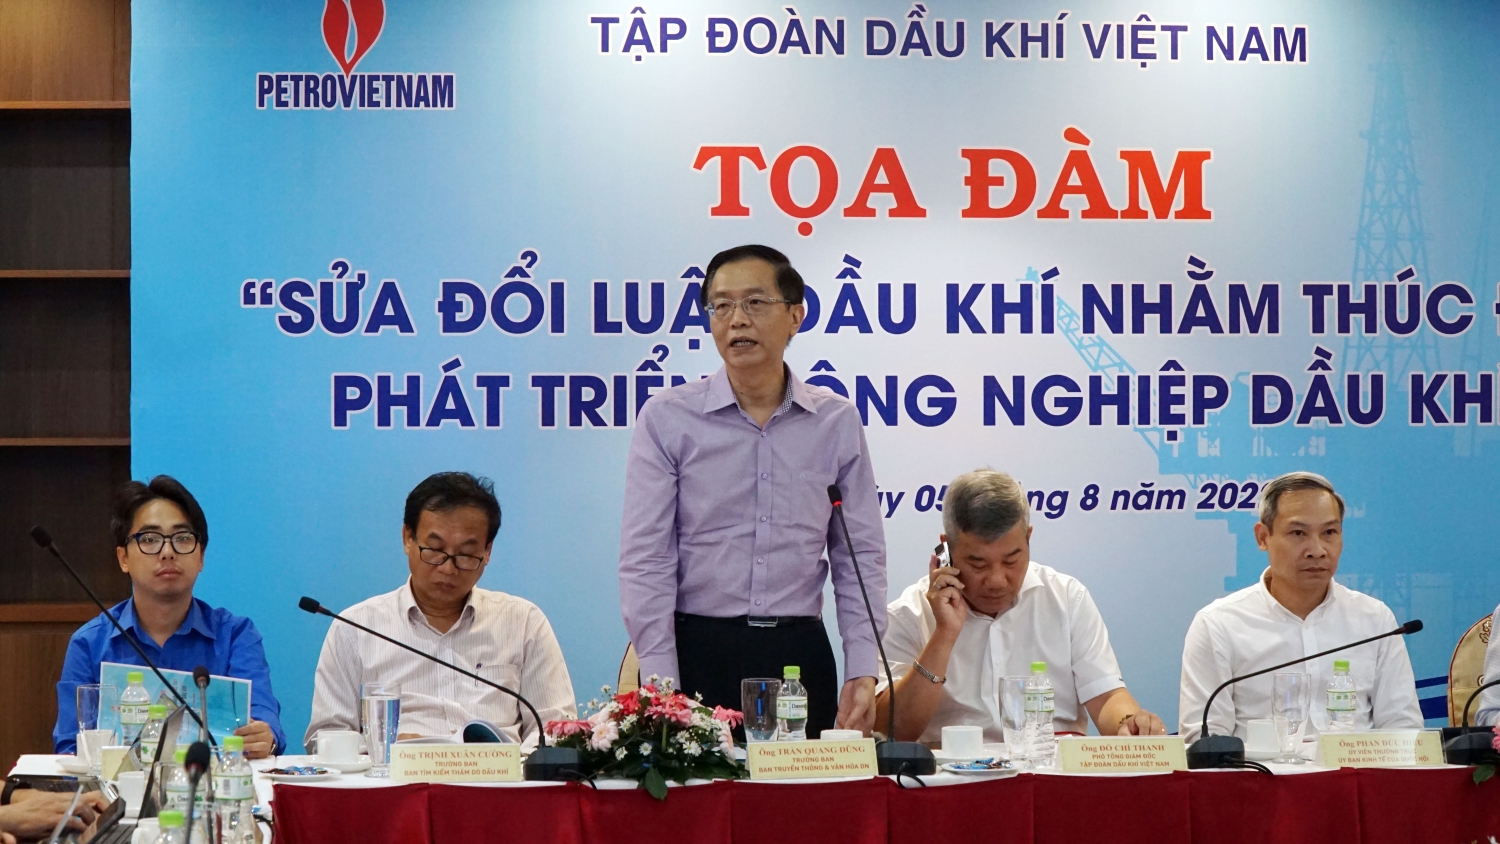 Ông Trần Quang Dũng - Trưởng Ban Truyền thông và Văn hóa doanh nghiệp Tập đoàn phát biểu kết luận Hội thảo